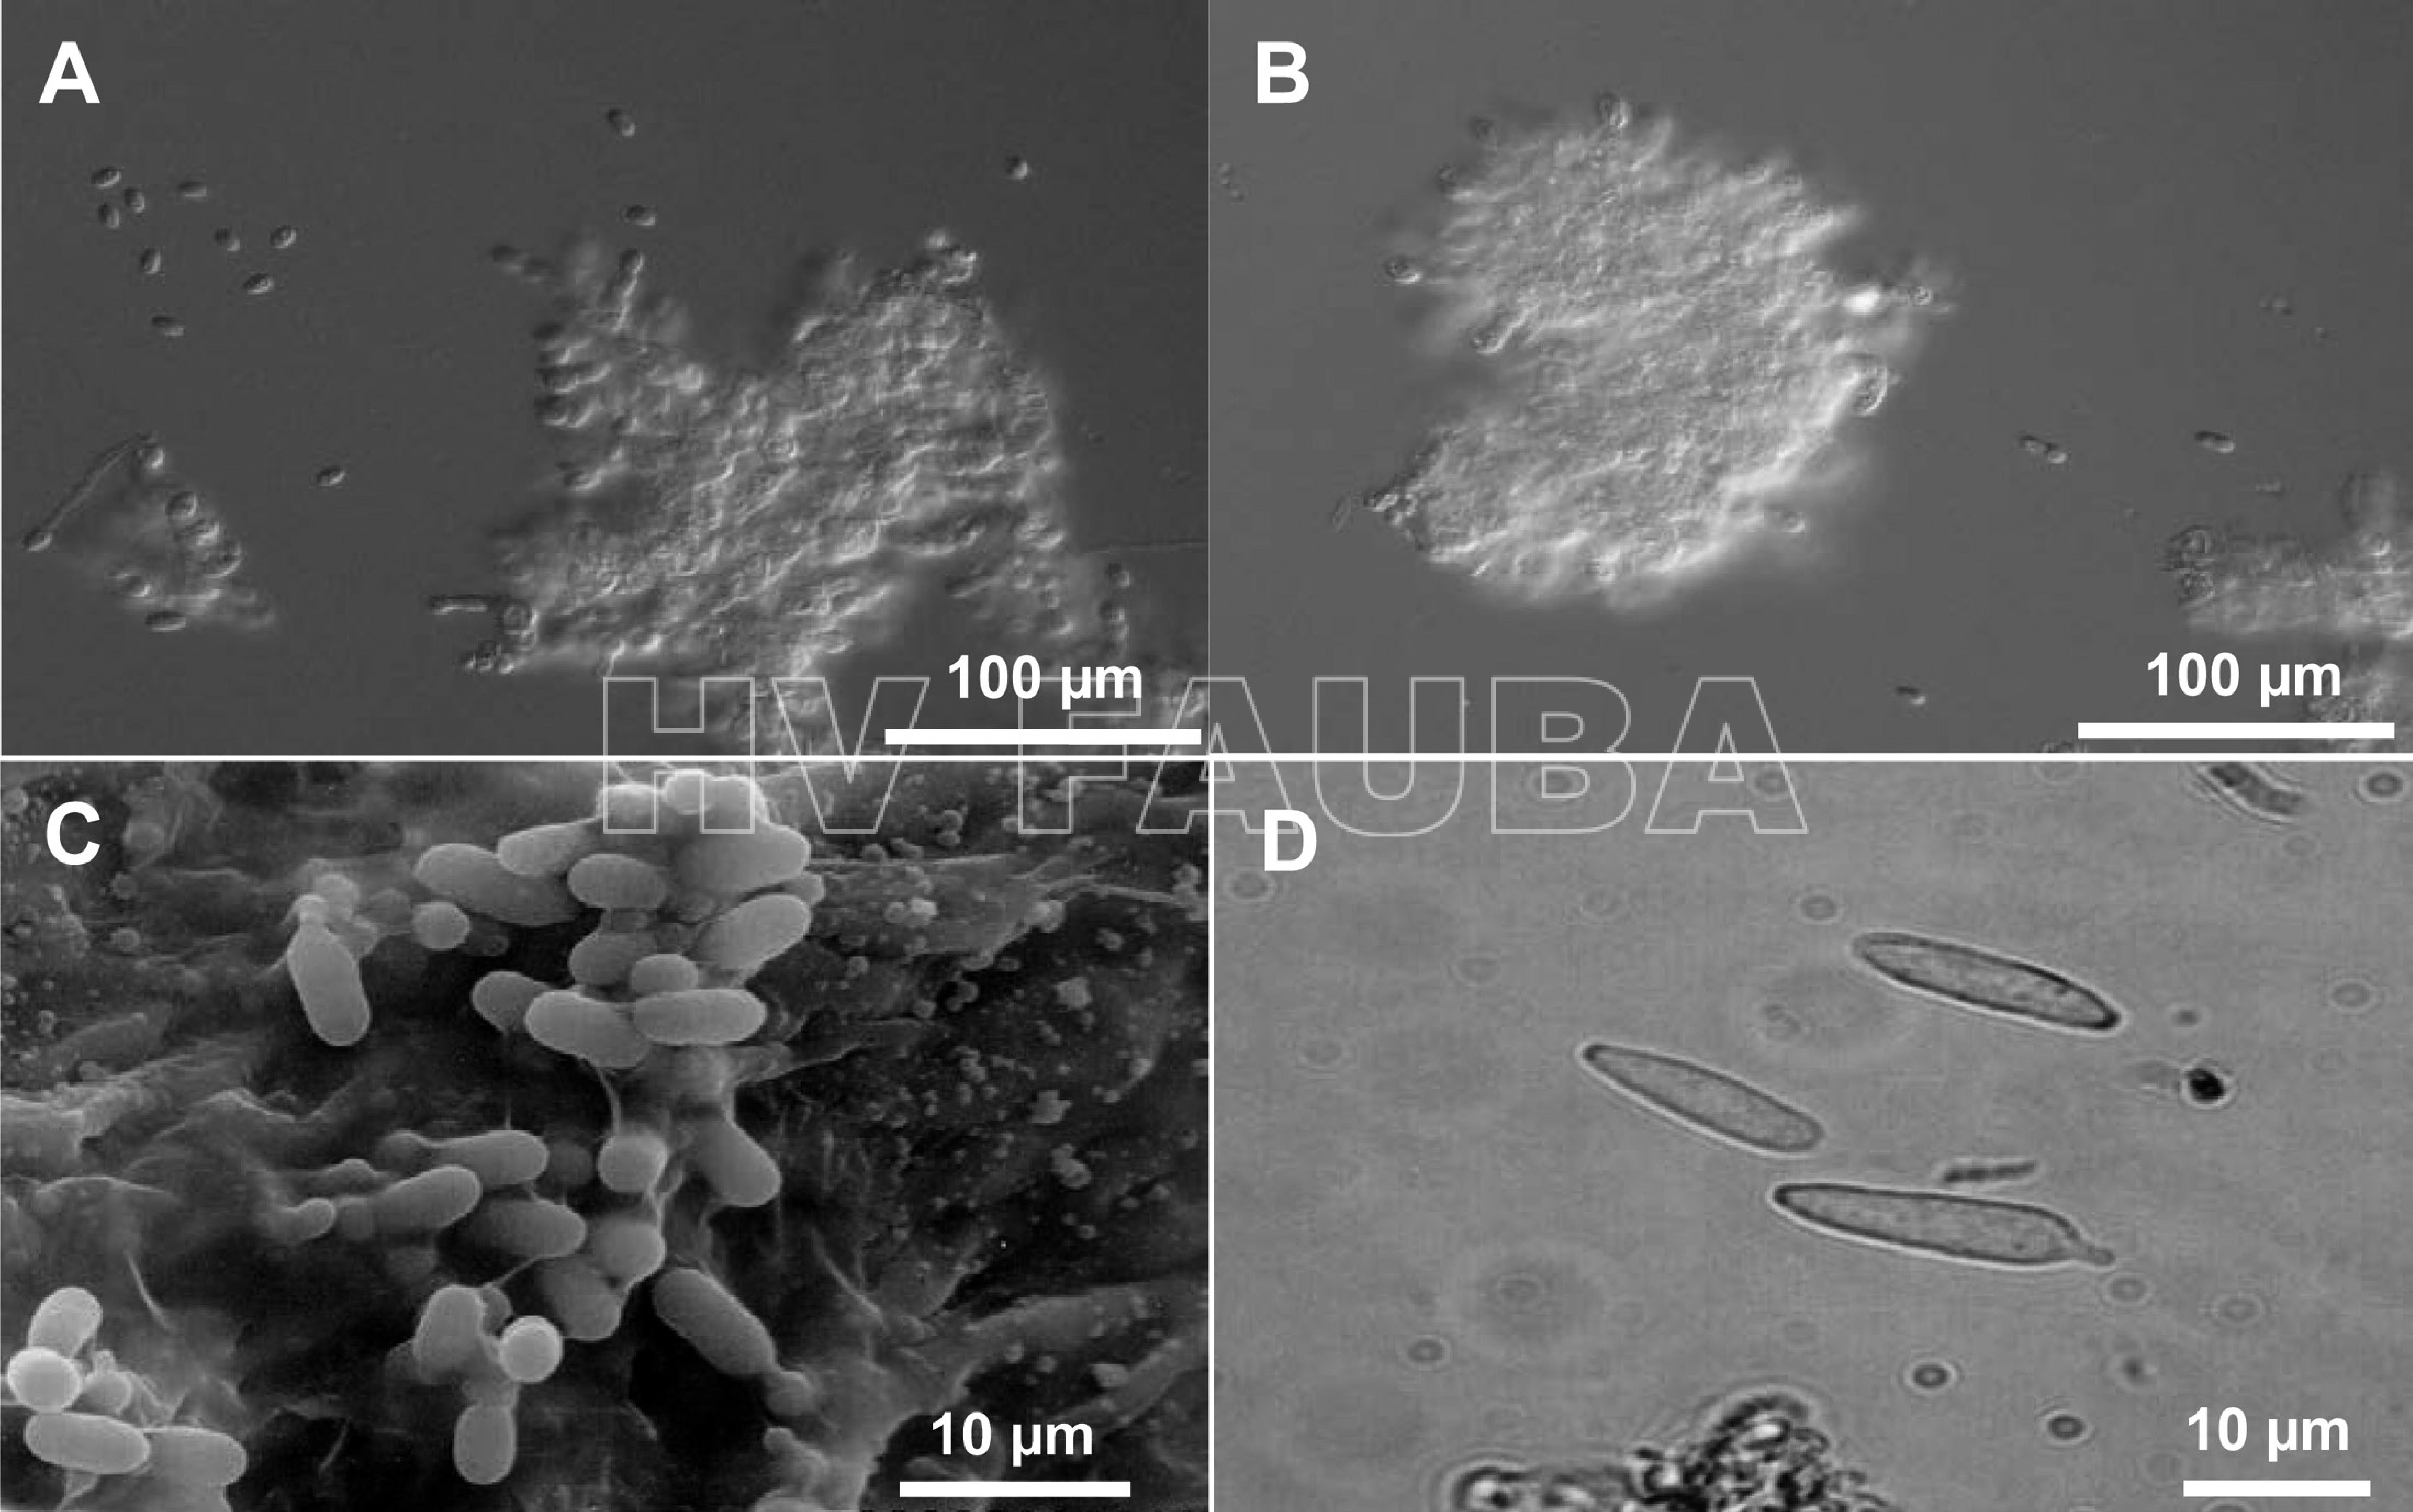 Conidios de Elsinoe spp. (A, B) conidios hialinos de E. fawcettii y E. australis producidos en agua, respectivamente. (C) conidios hialinos en una lesión foliar de E. fawcettii observada al microscopio electrónico de barrido. (D) conidios fusiformes de E. fawcettii producidos sobre una lesión foliar. Autor: Hyun et al., 2015.